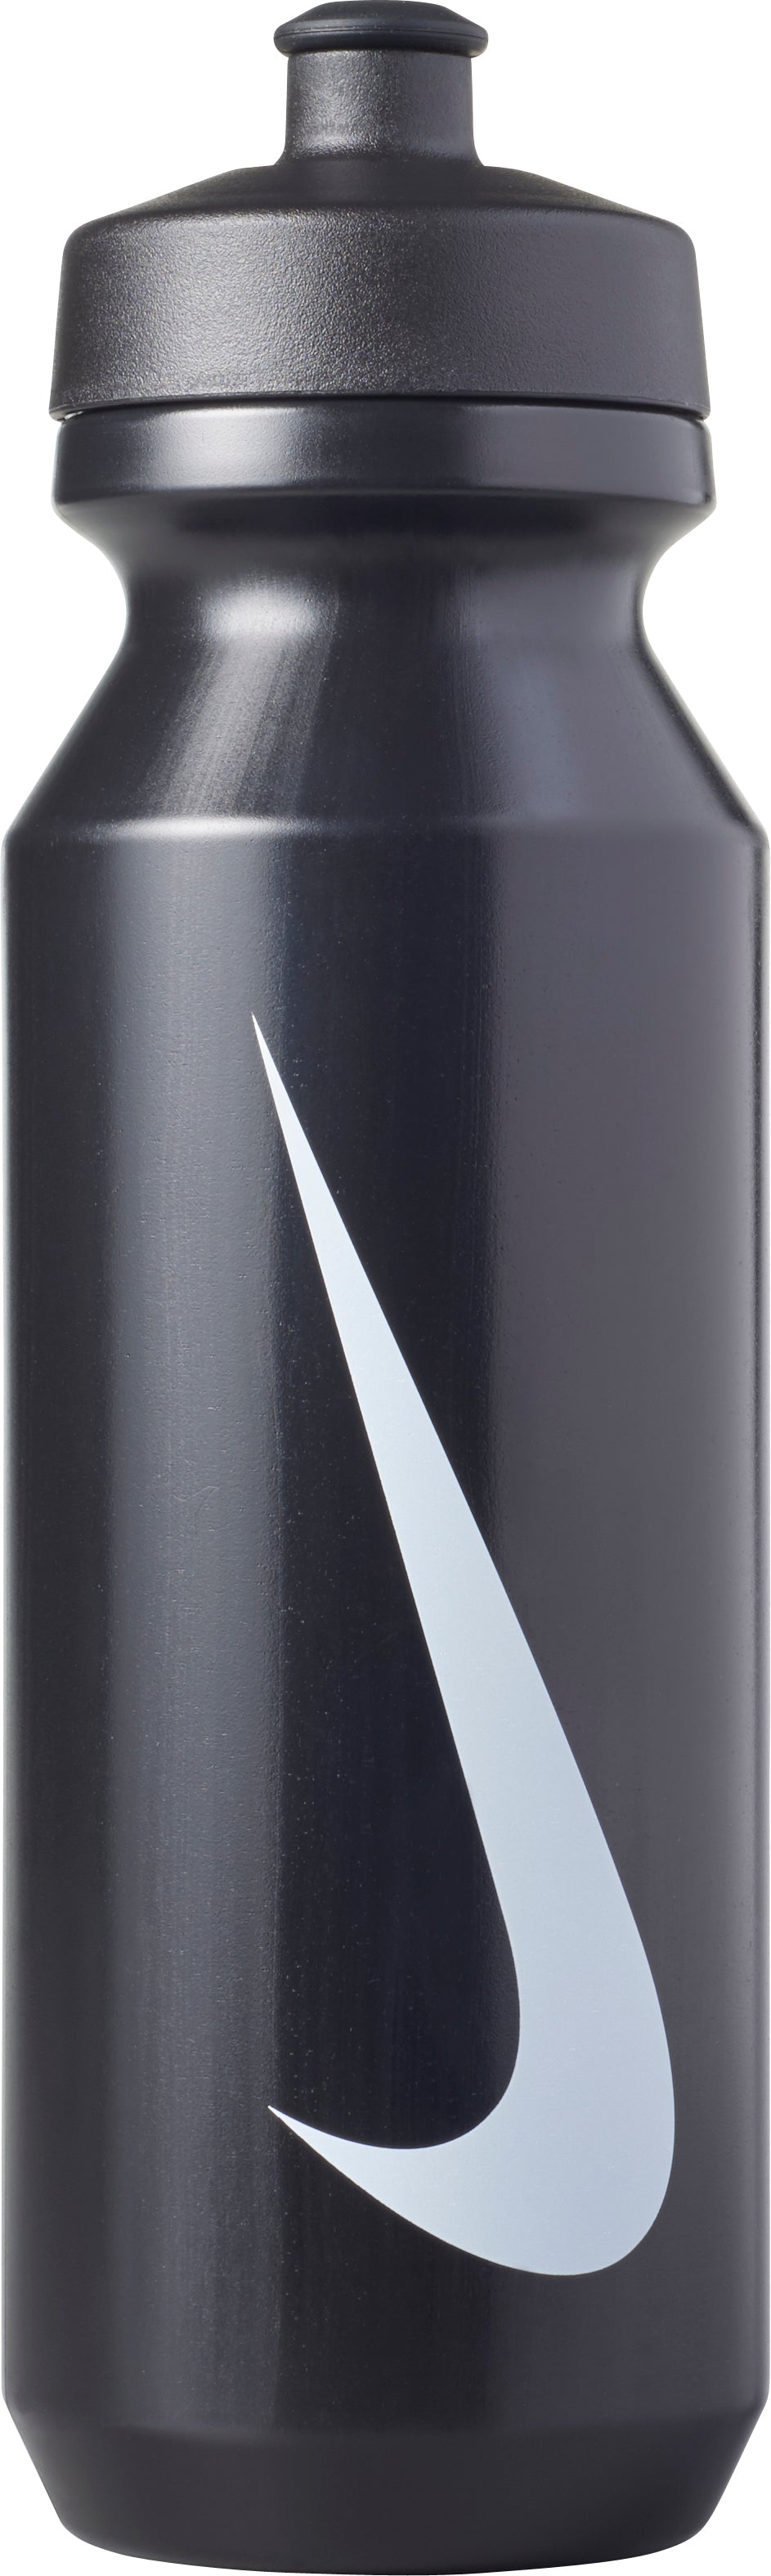 Nike Big Mouth Bottle 2.0 (32OZ) --_'Black/White'_